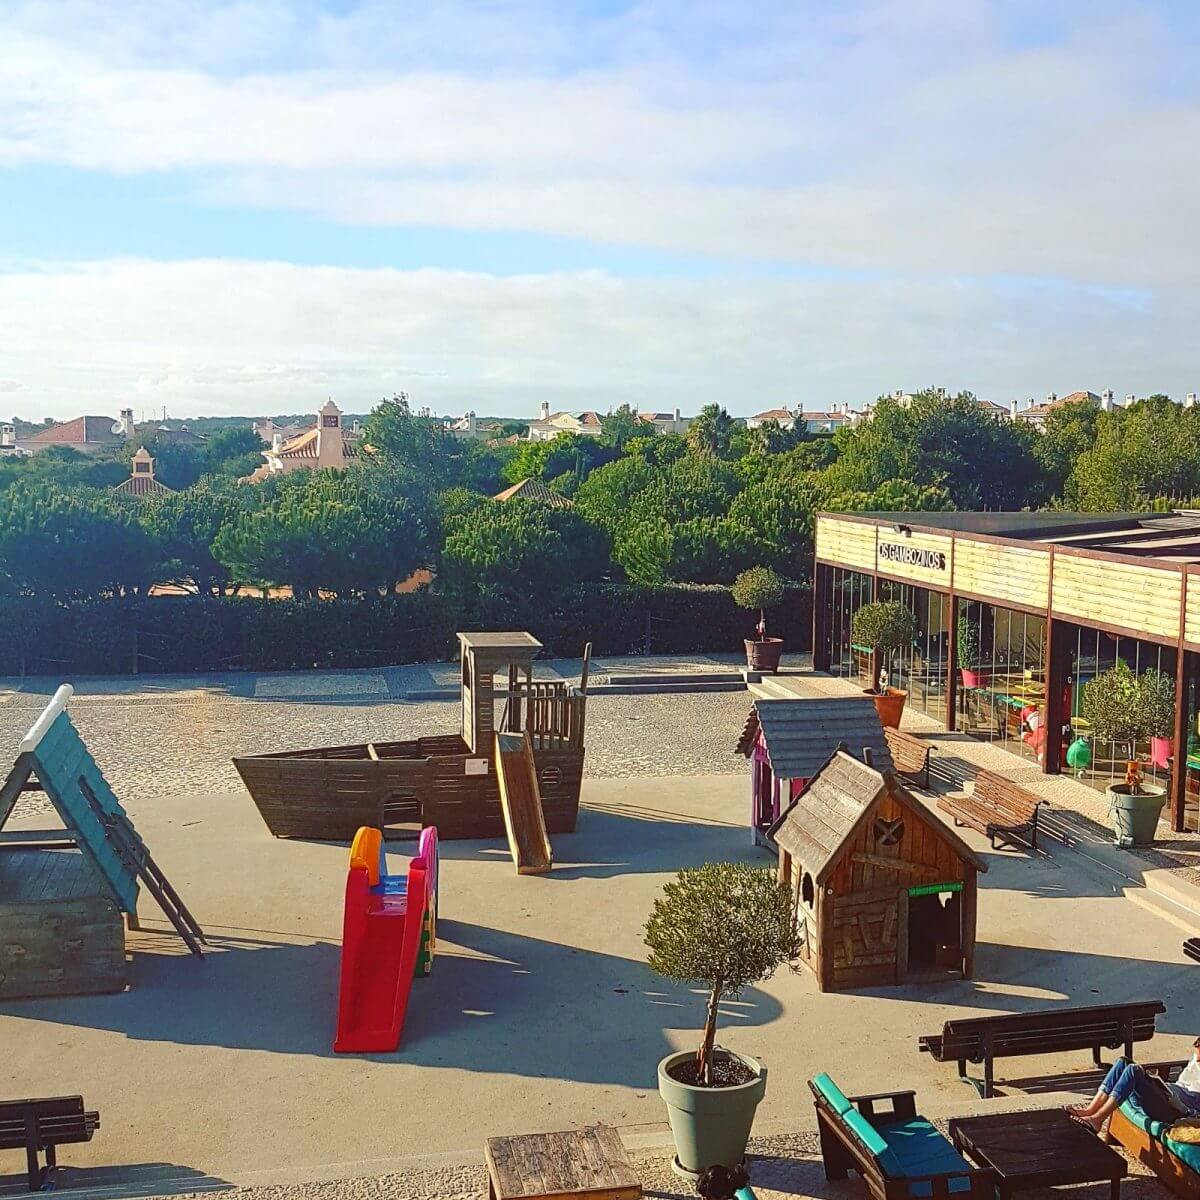 De leukste kindvriendelijke restaurants in de Algarve - Childfriendly restaurants Algarve with kids - restaurant Village square speeltuin